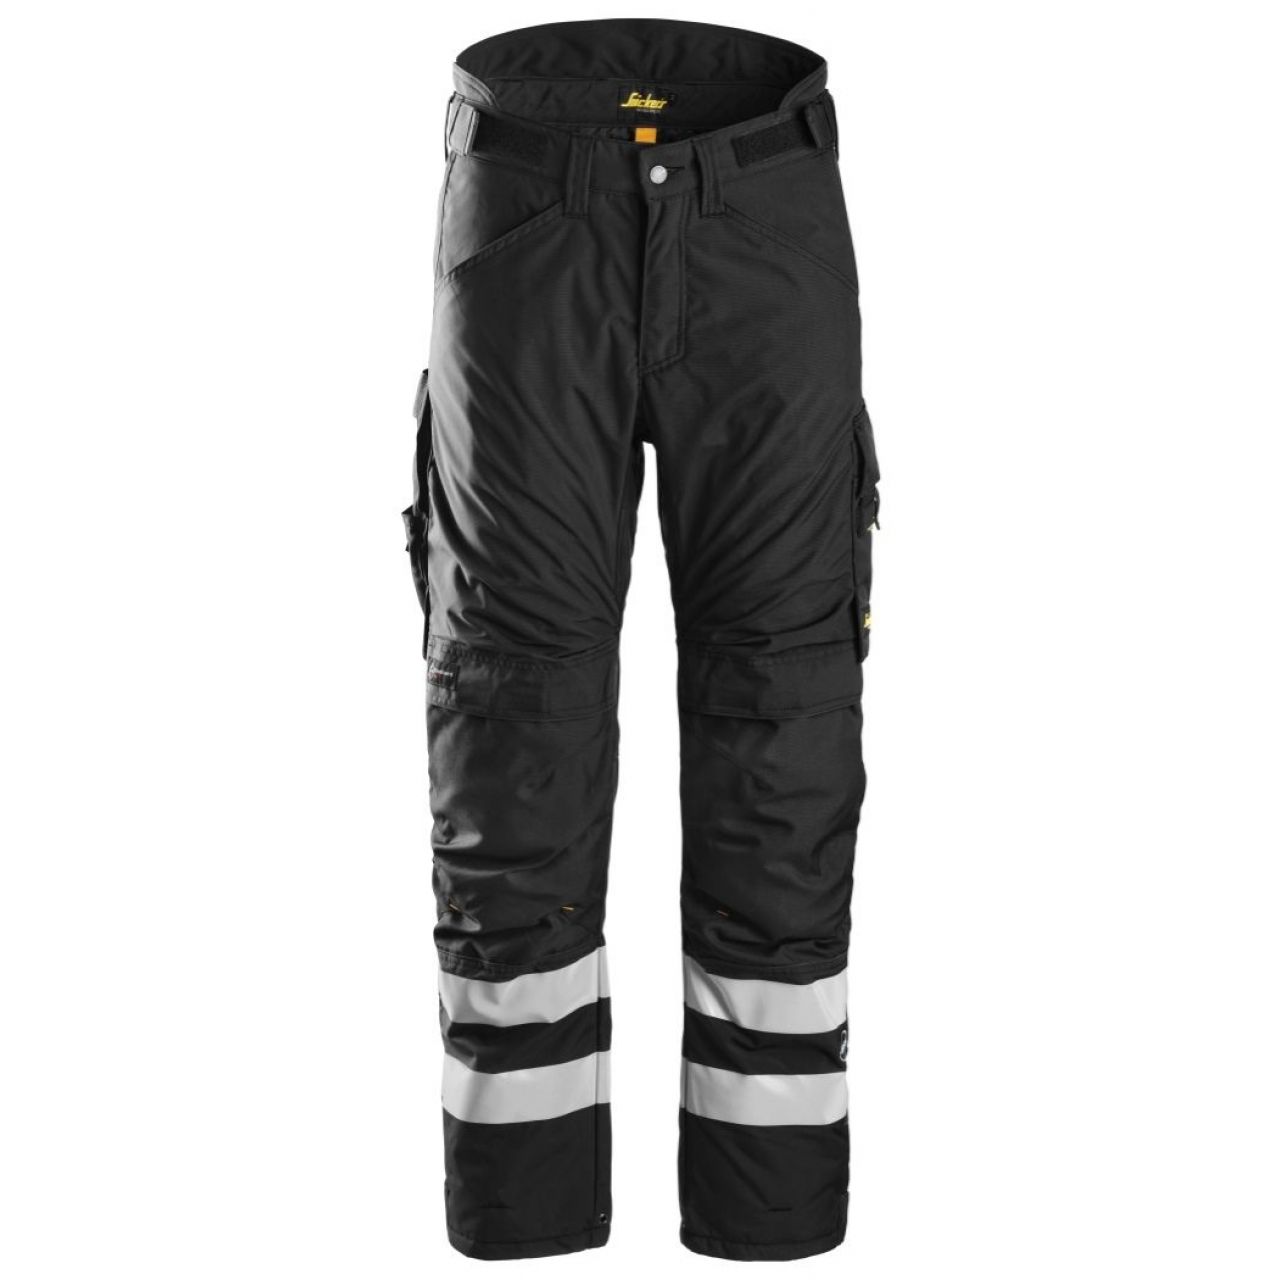 Pantalon aislante AllroundWork 37.5® negro talla S corto